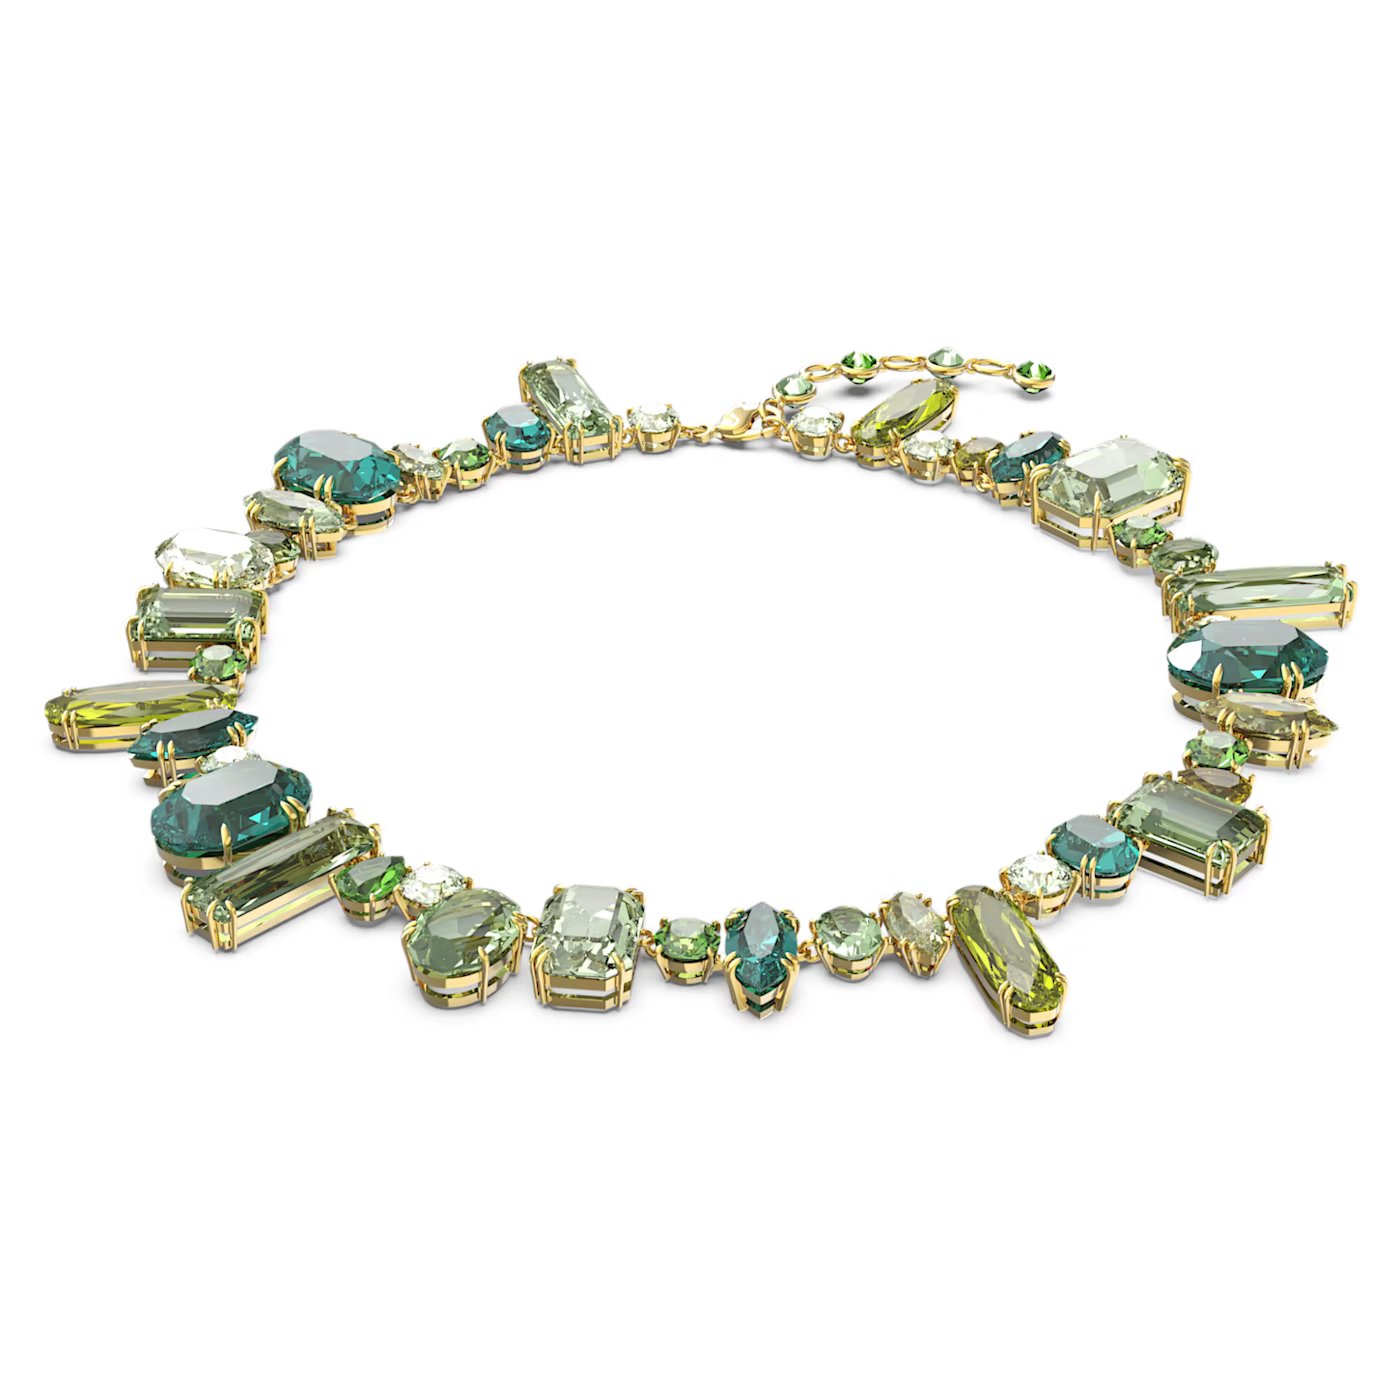 62f3c300c8af4_px-gema-necklace--green--gold-tone-plated-swarovski-5613735.jpg